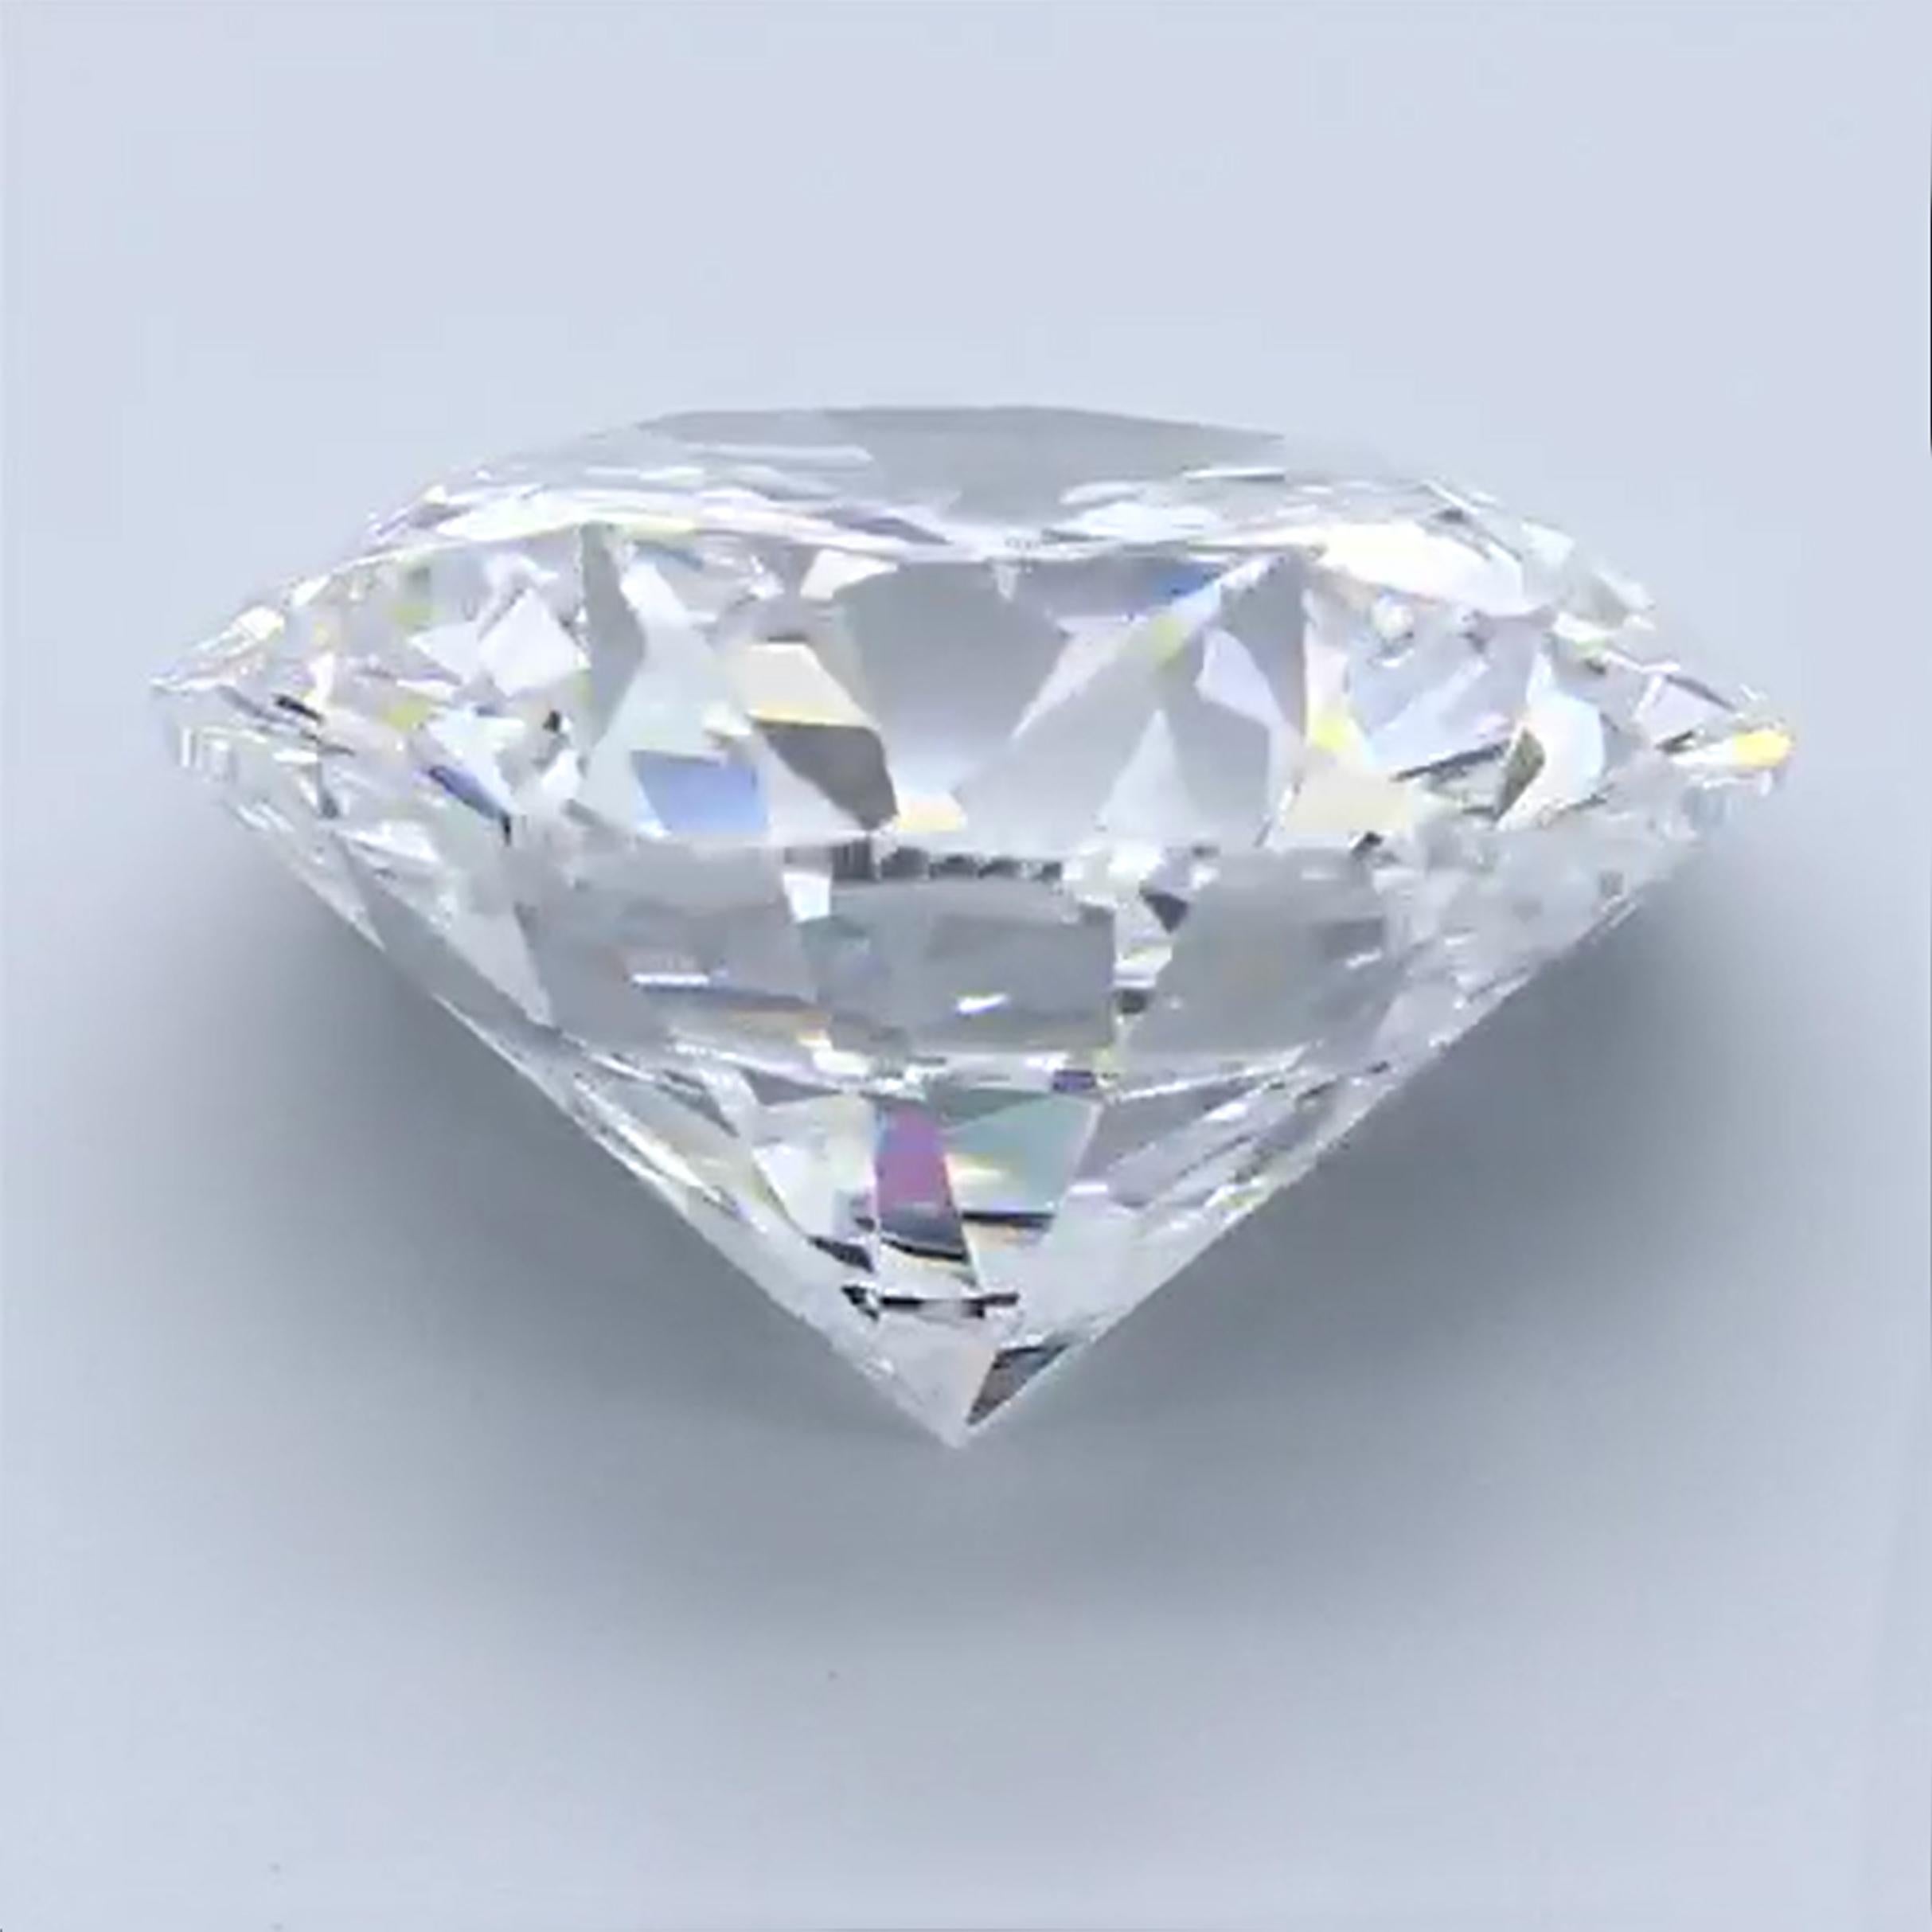 21.05 carat emerald shape diamond